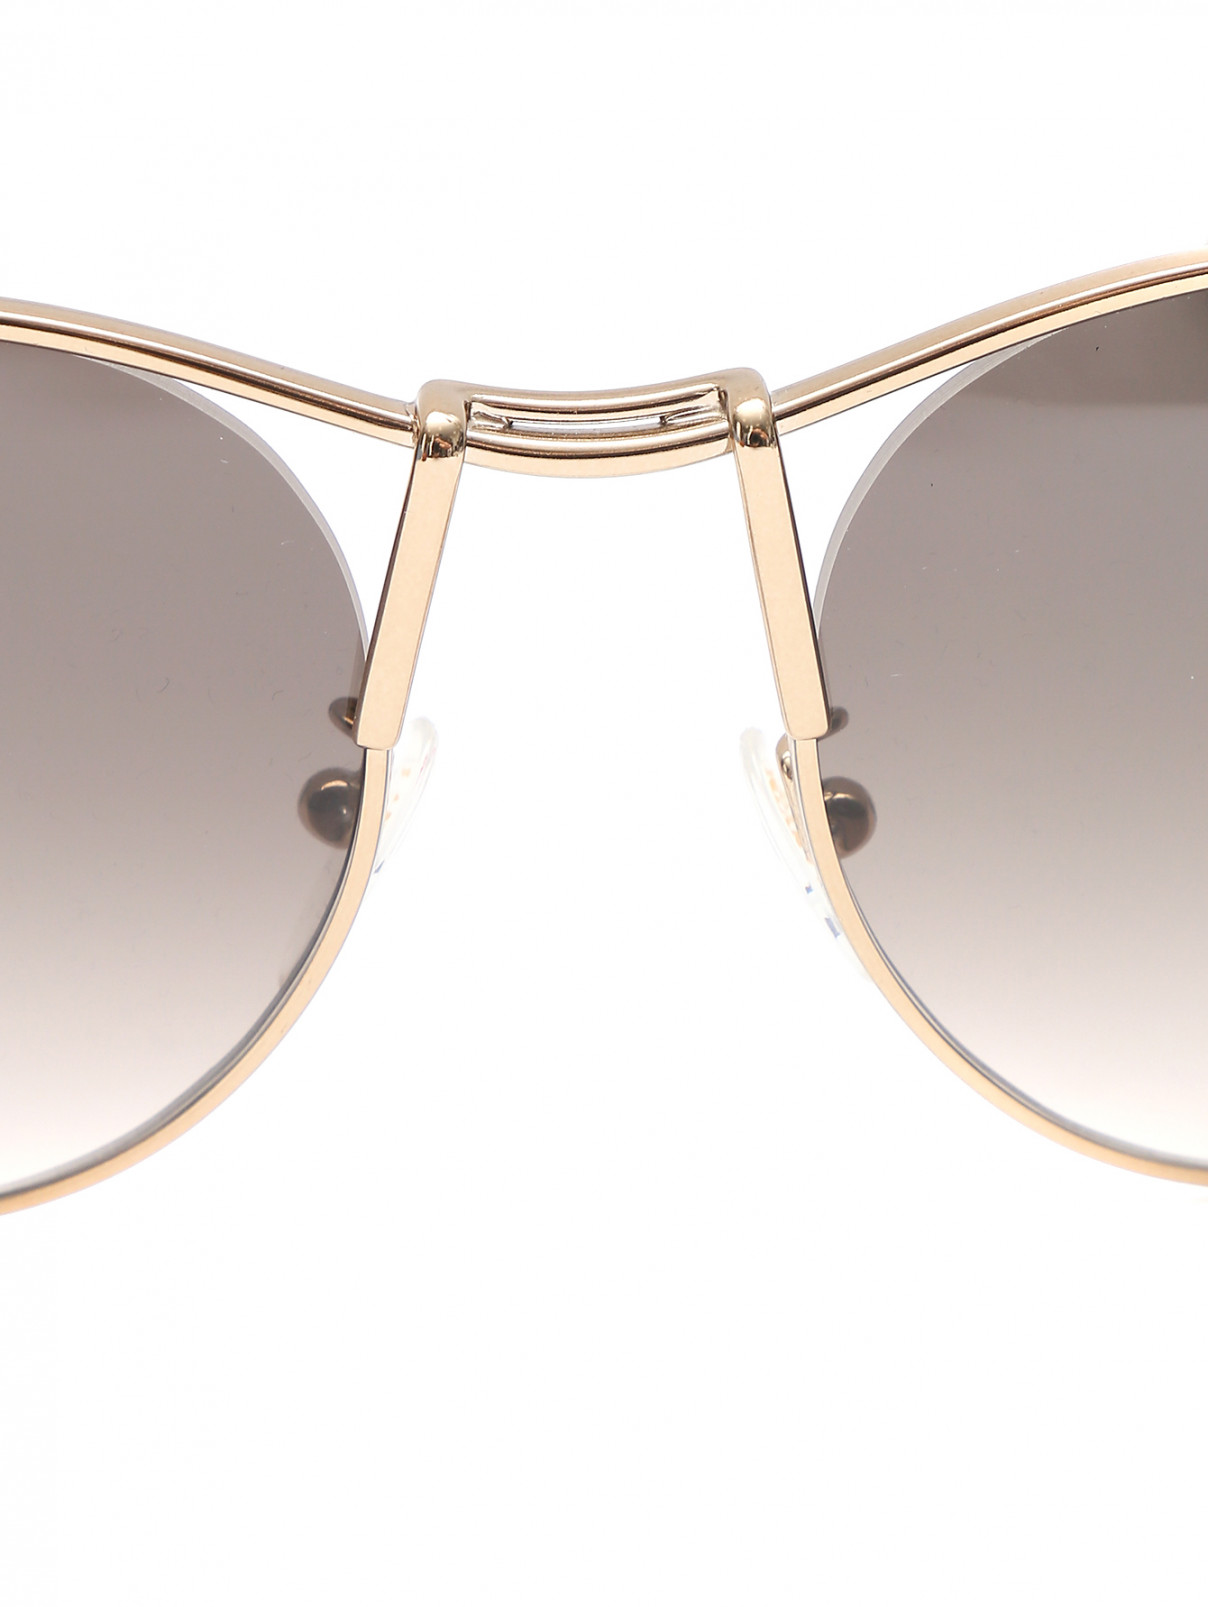 Cолнцезащитные очки в оправе из металла Lanvin  –  Деталь  – Цвет:  Металлик